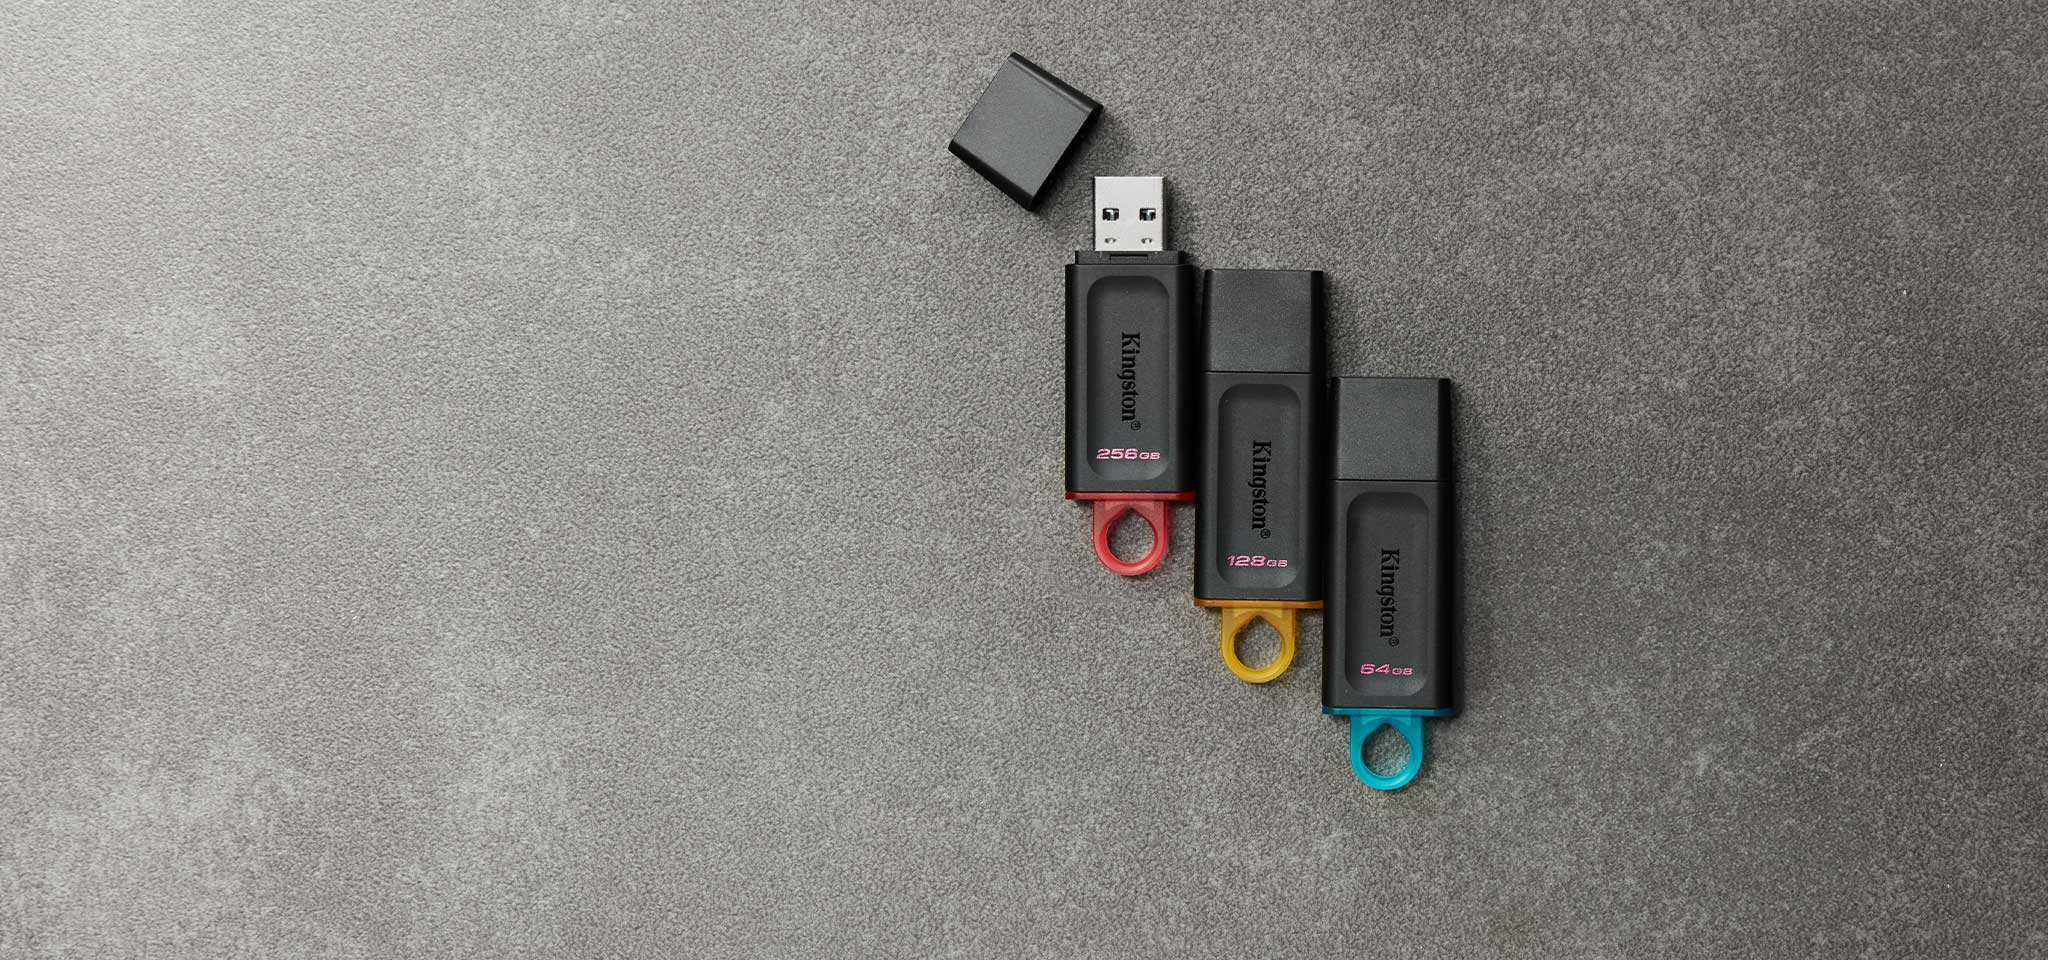 ภาพมุมสูงของ DT Exodia แฟลชไดรฟ์ USB สี่ชิ้นที่มีสีแตกต่างกันไปตามความจุ โดยวางอยู่บนพรมสีเทา